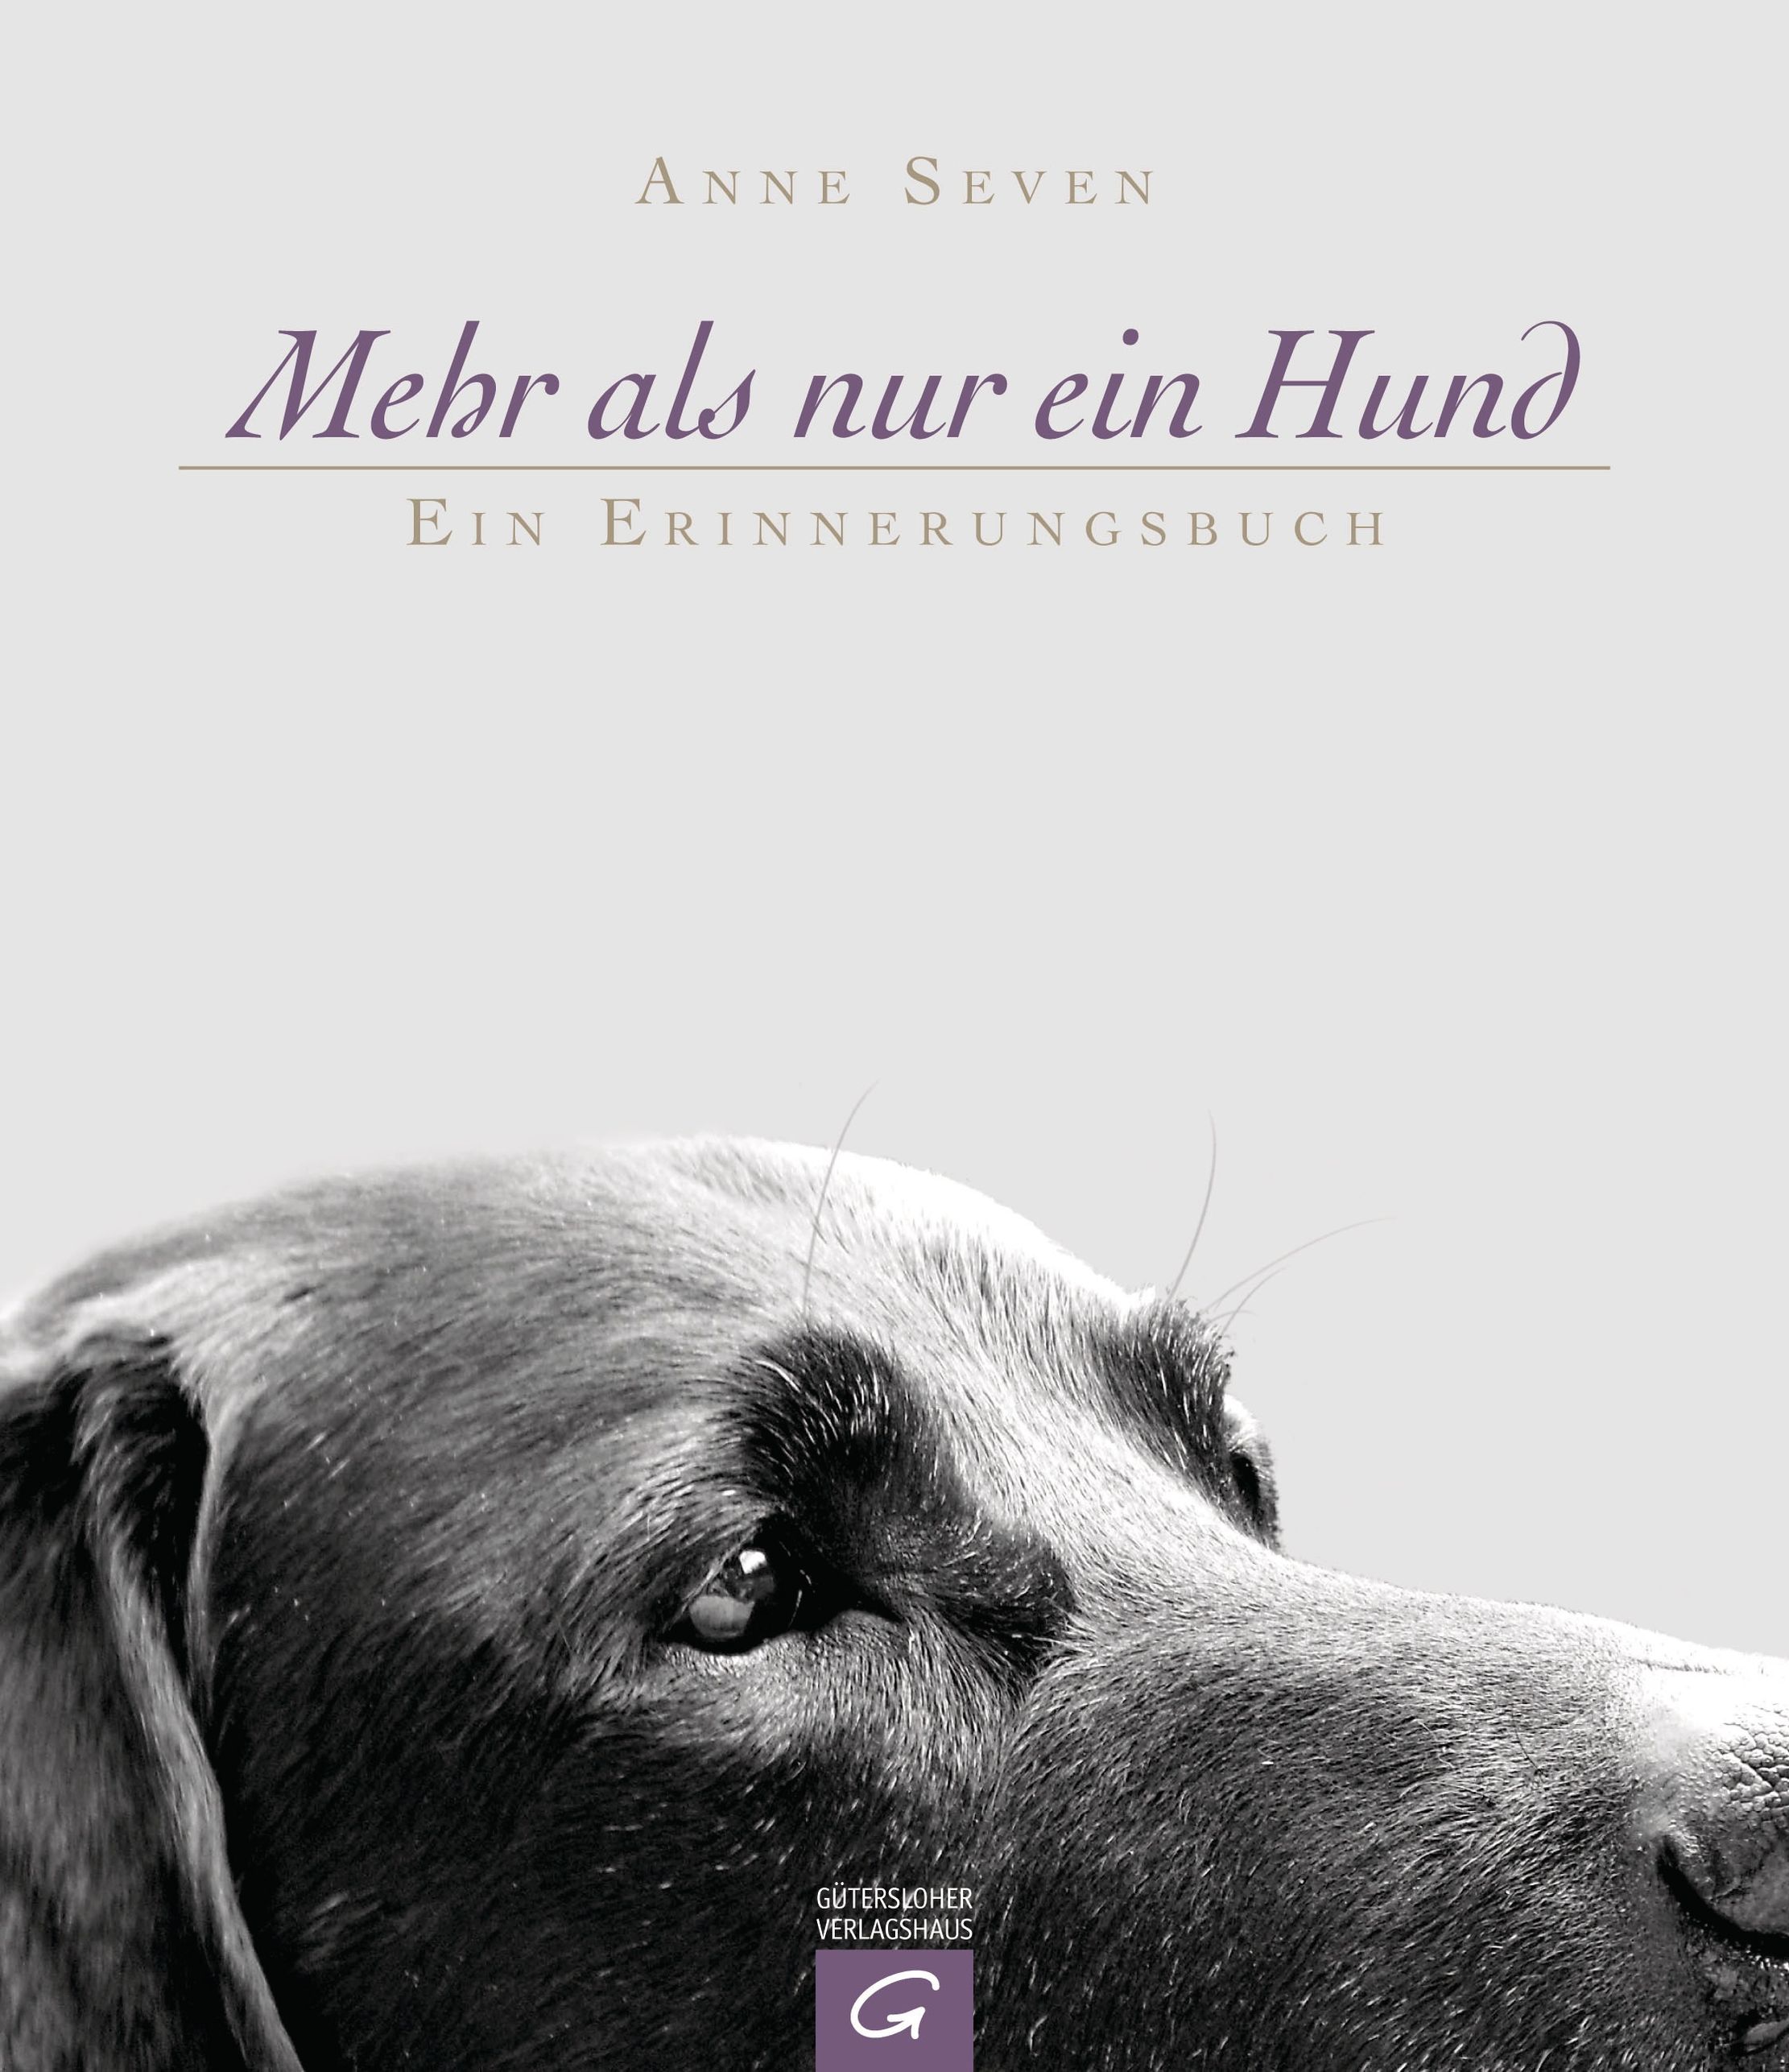 Mehr als nur ein Hund Buch von Anne Seven versandkostenfrei - Weltbild.de